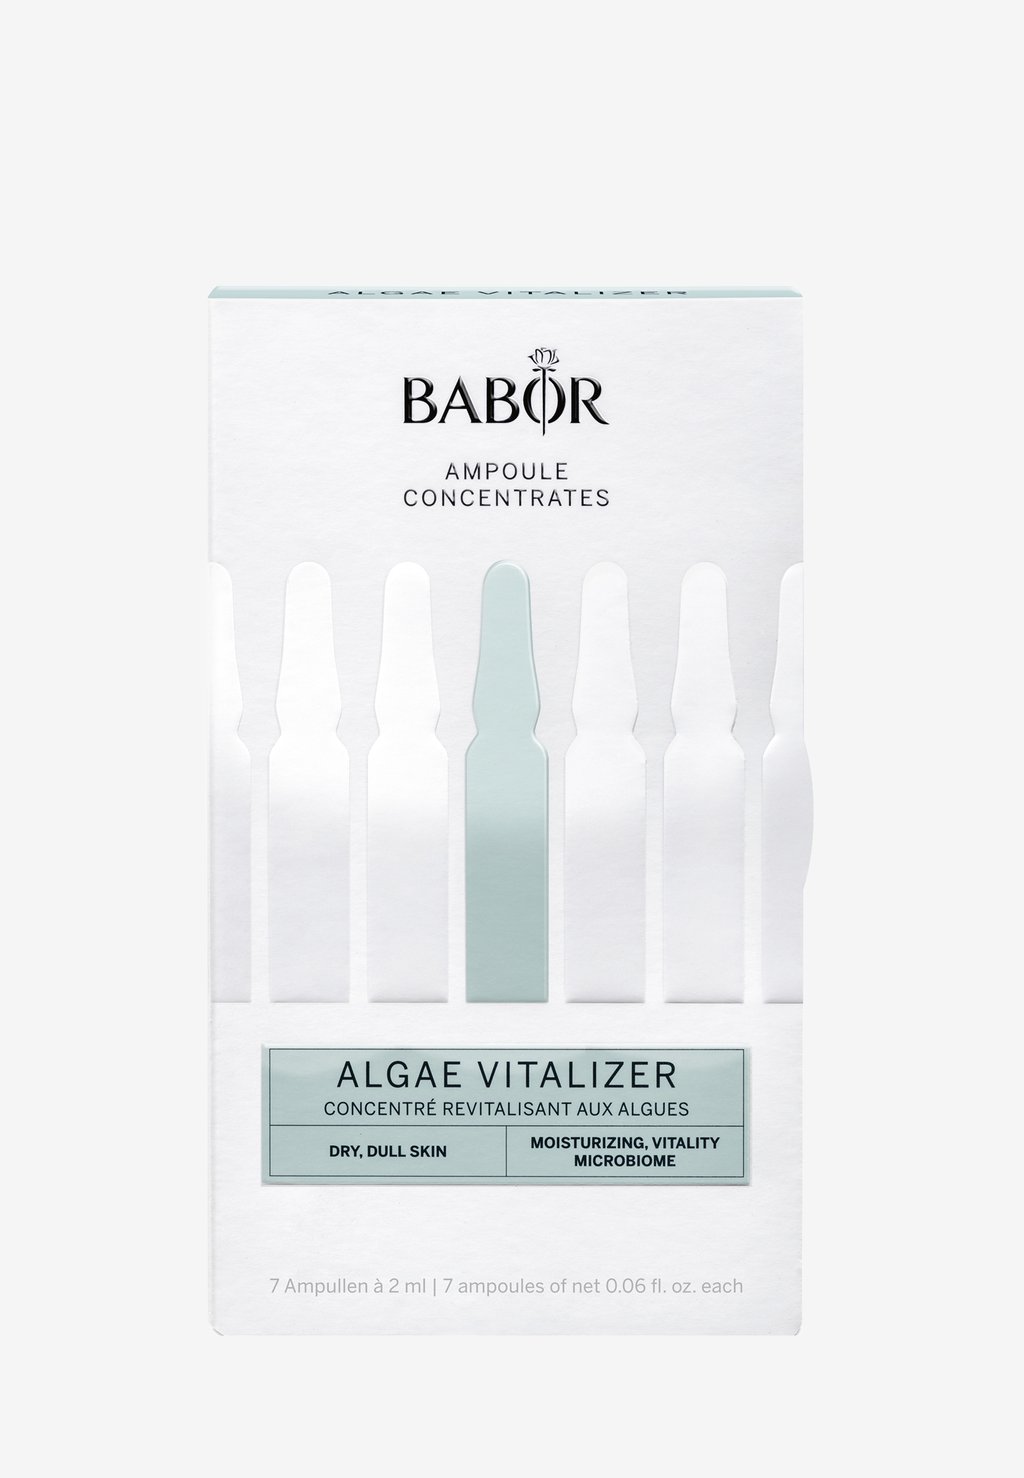 Набор для ухода за кожей Algae Vitalizer BABOR набор для ухода за кожей sos de blemish kit babor